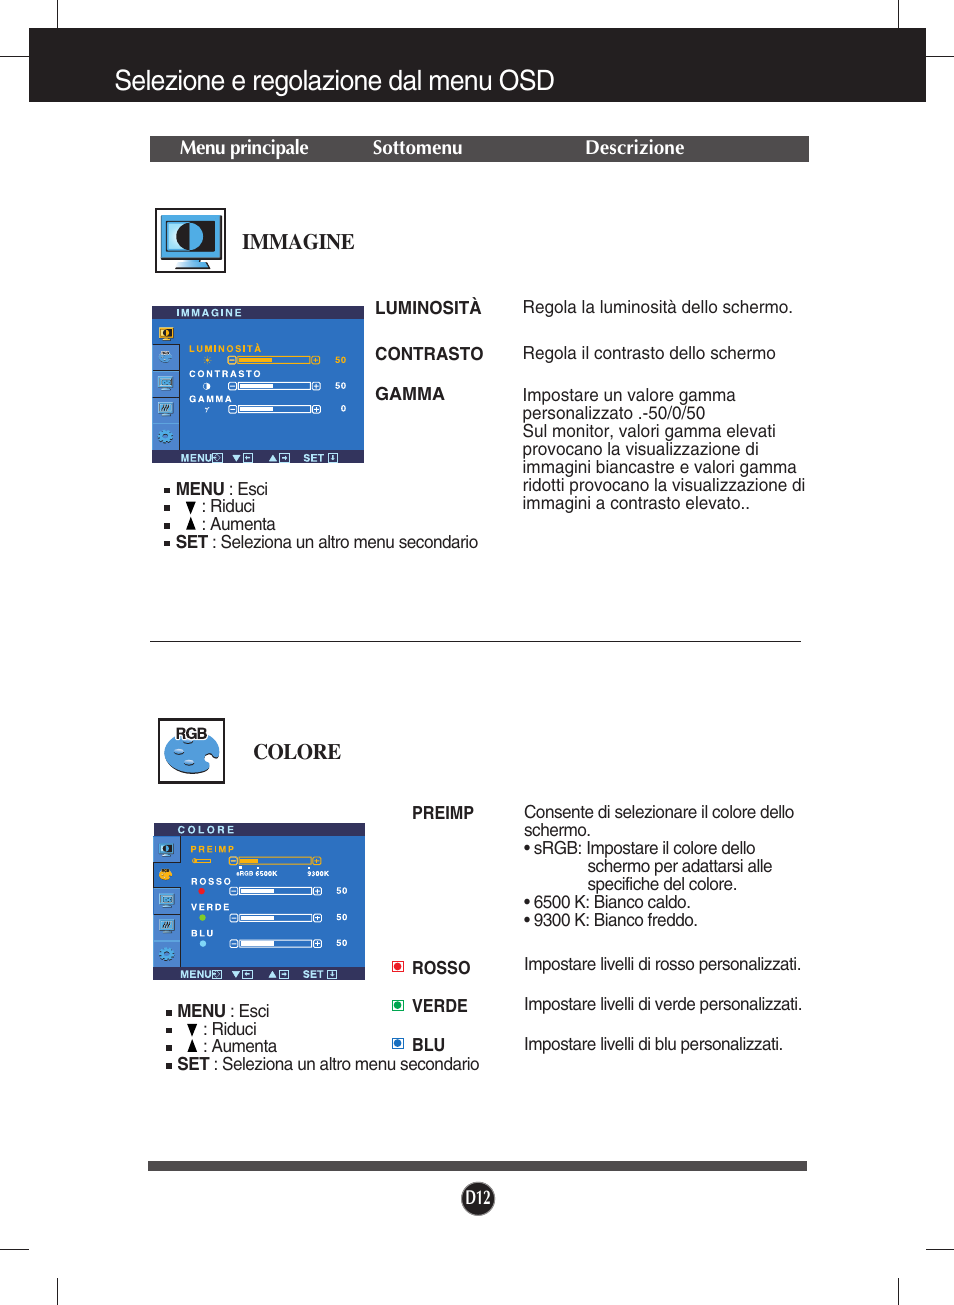 Immagine, Colore, Selezione e regolazione dal menu osd | LG W2234S-BN Manuale d'uso | Pagina 13 / 27